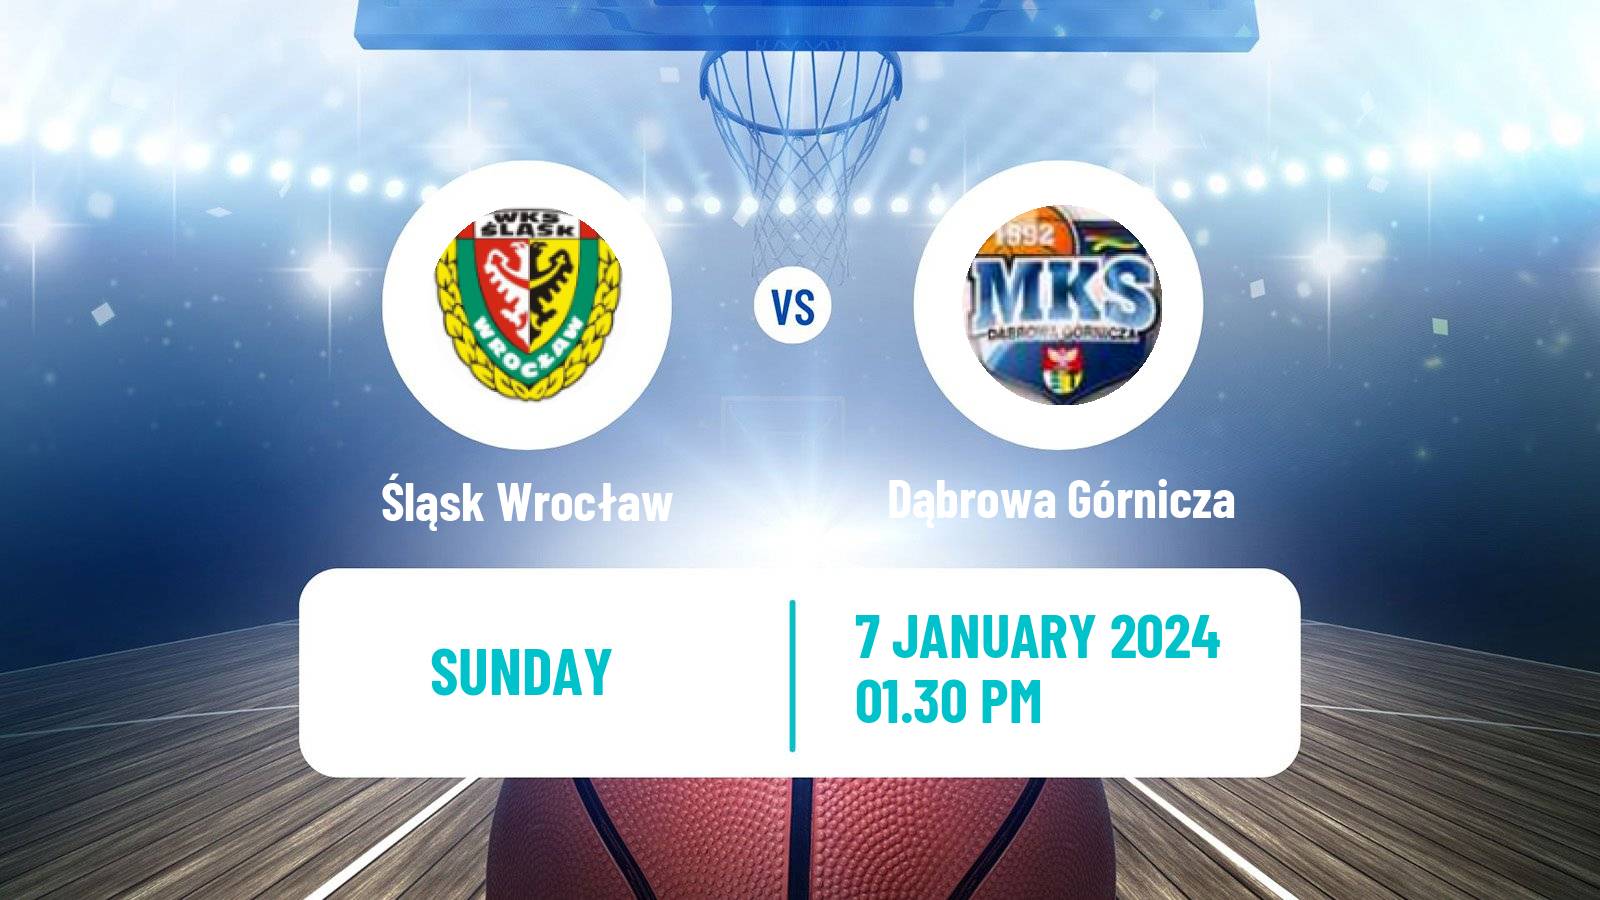 Basketball Polish Basket Liga Śląsk Wrocław - Dąbrowa Górnicza